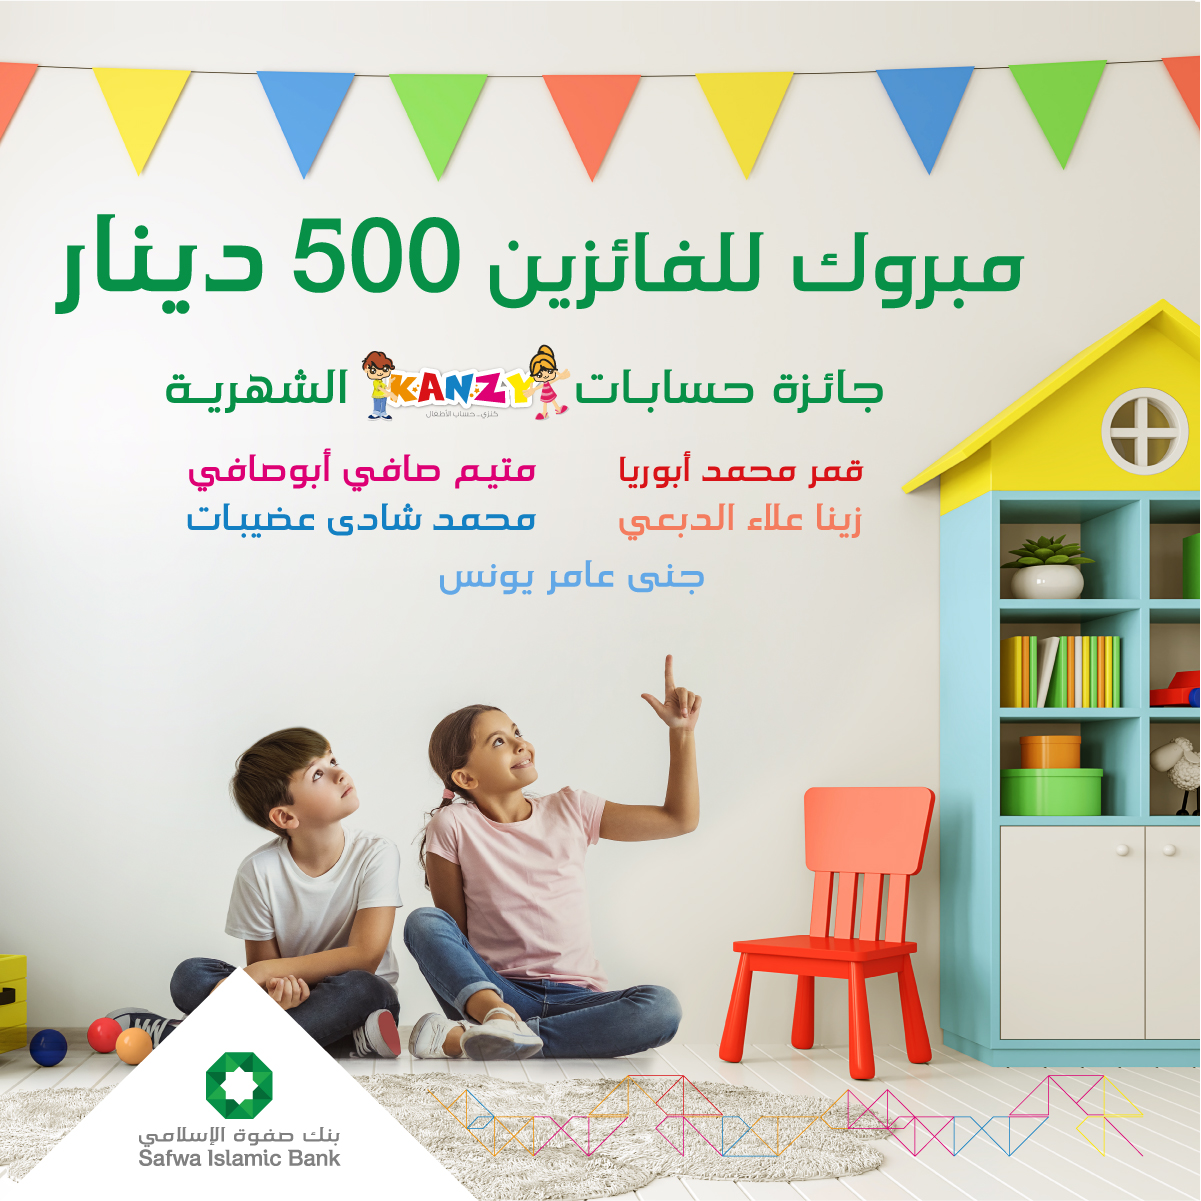 بنك صفوة الإسلامي يعلن الفائزين بجوائز حساب توفير الأطفال "كنزي" لشهر شباط 2022